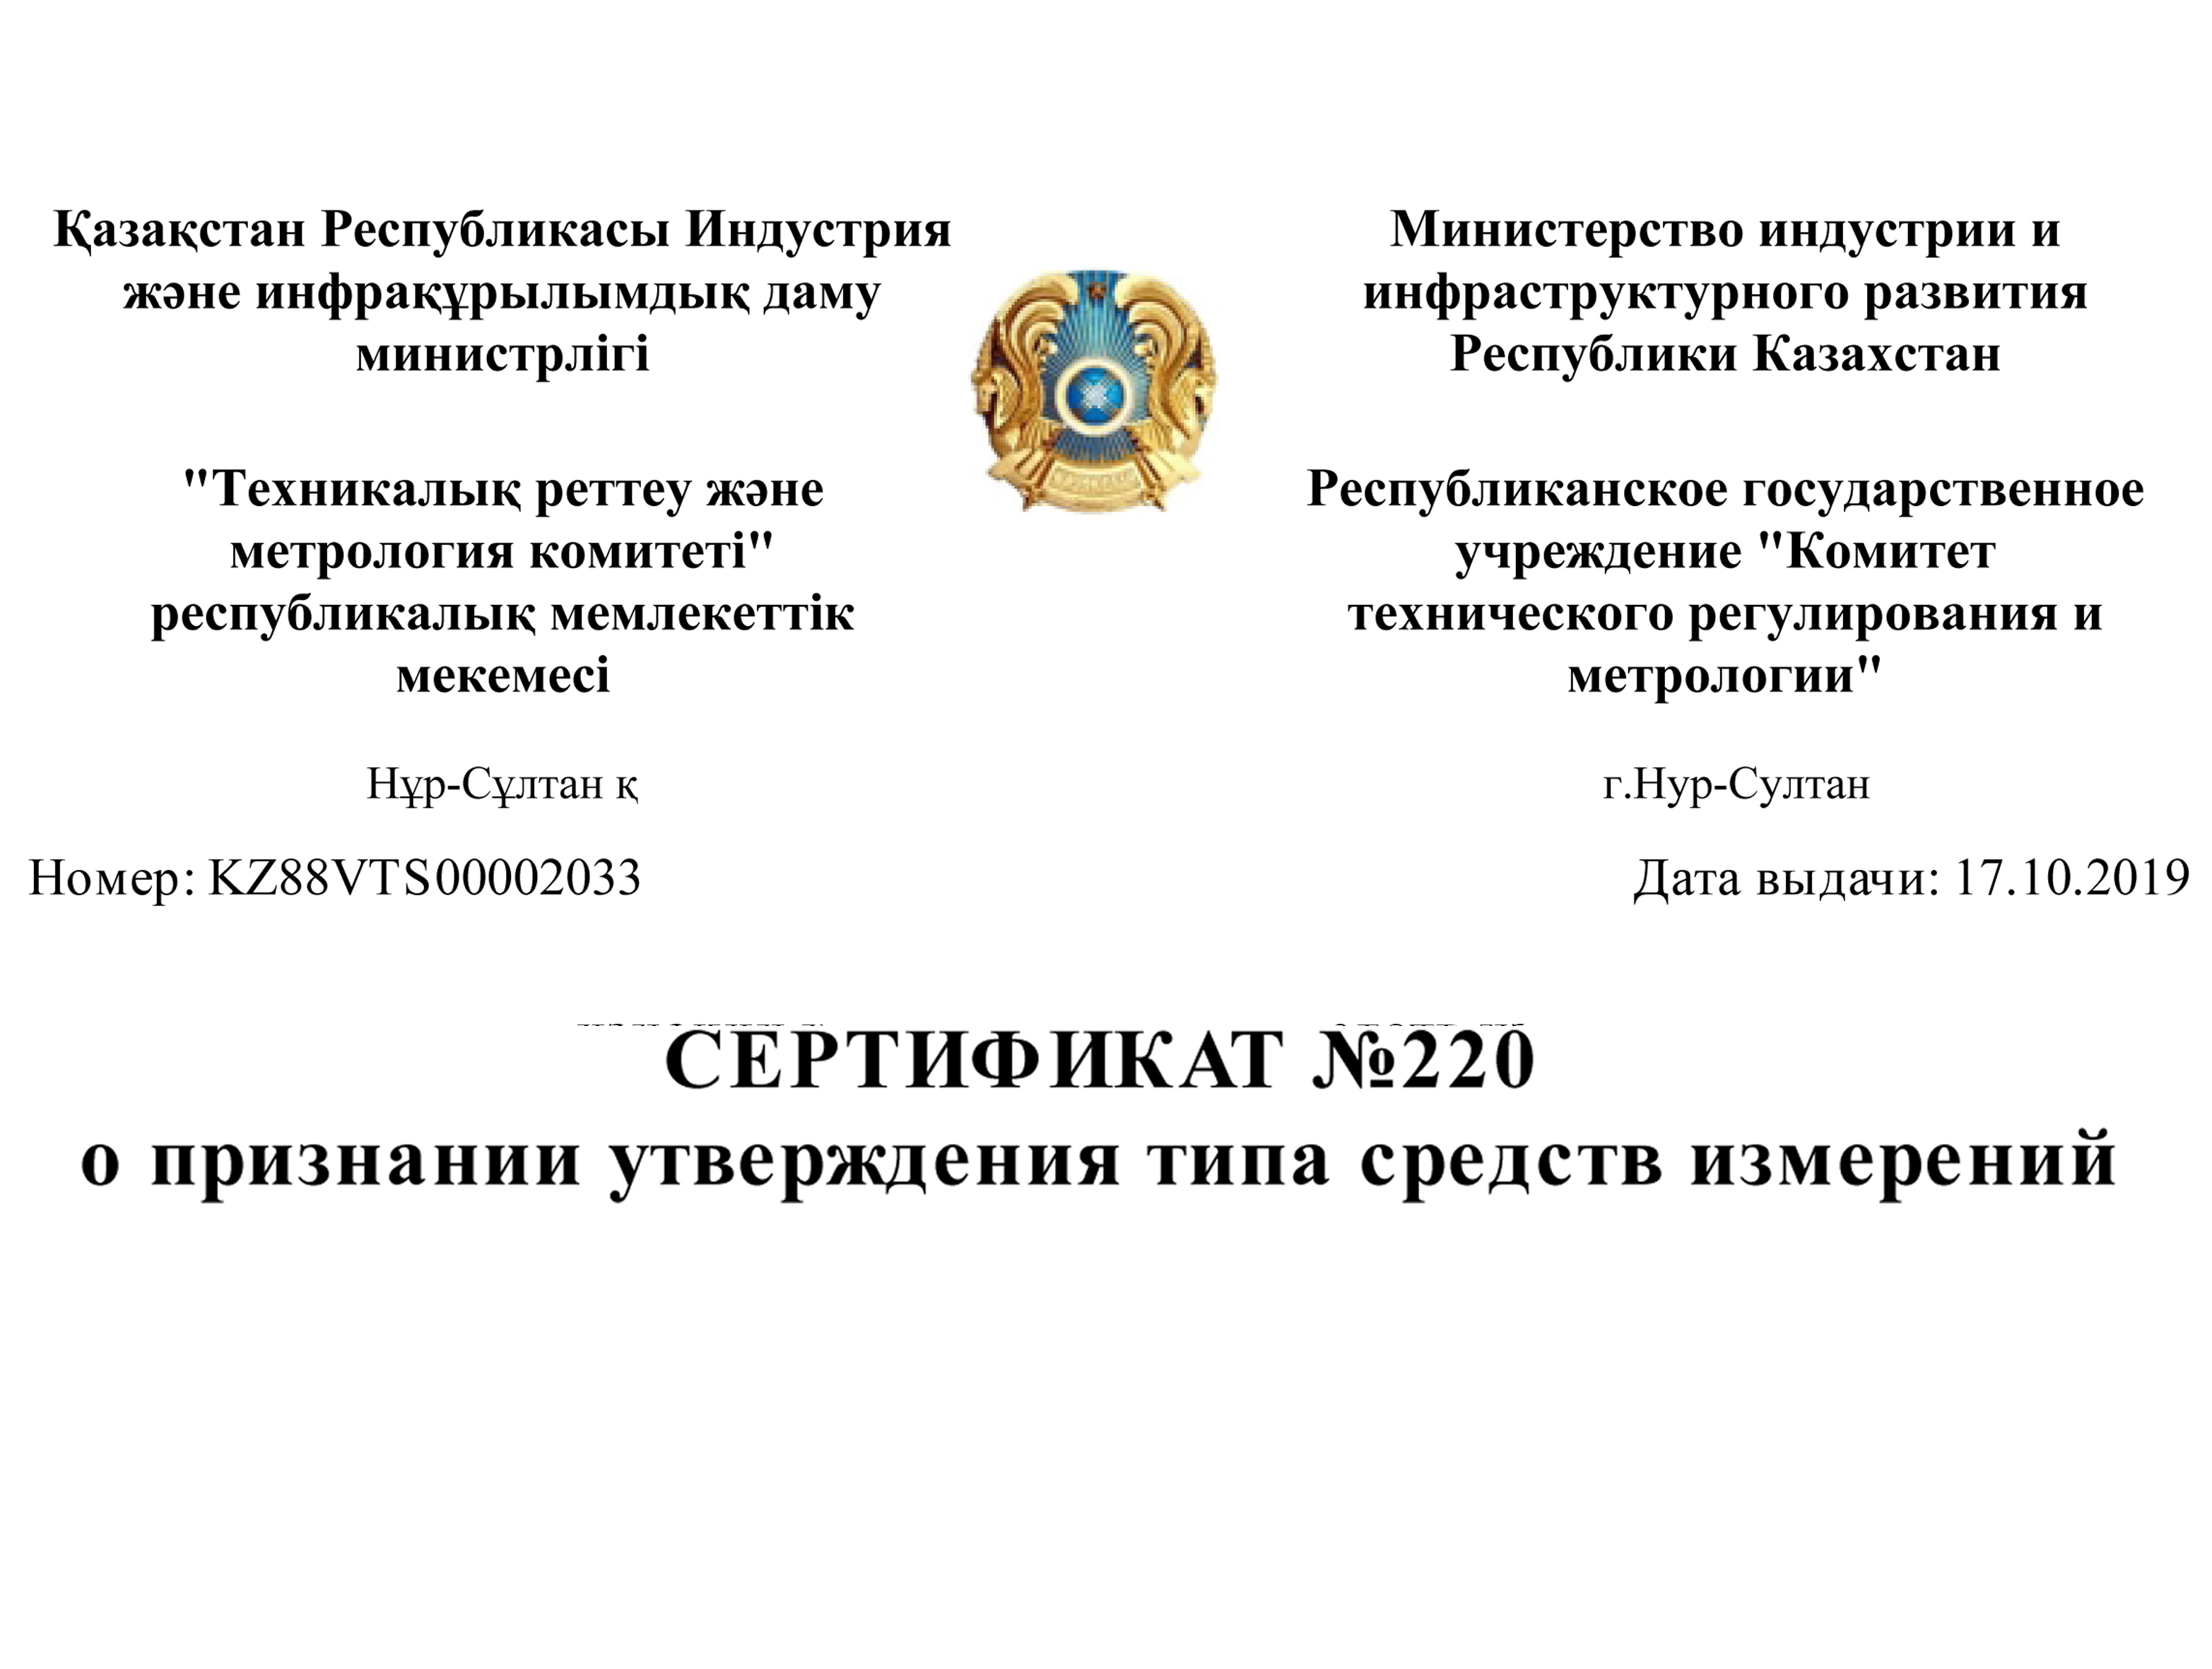 Получен сертификат о признании утверждения типа СИ на территории Республики Казахстан